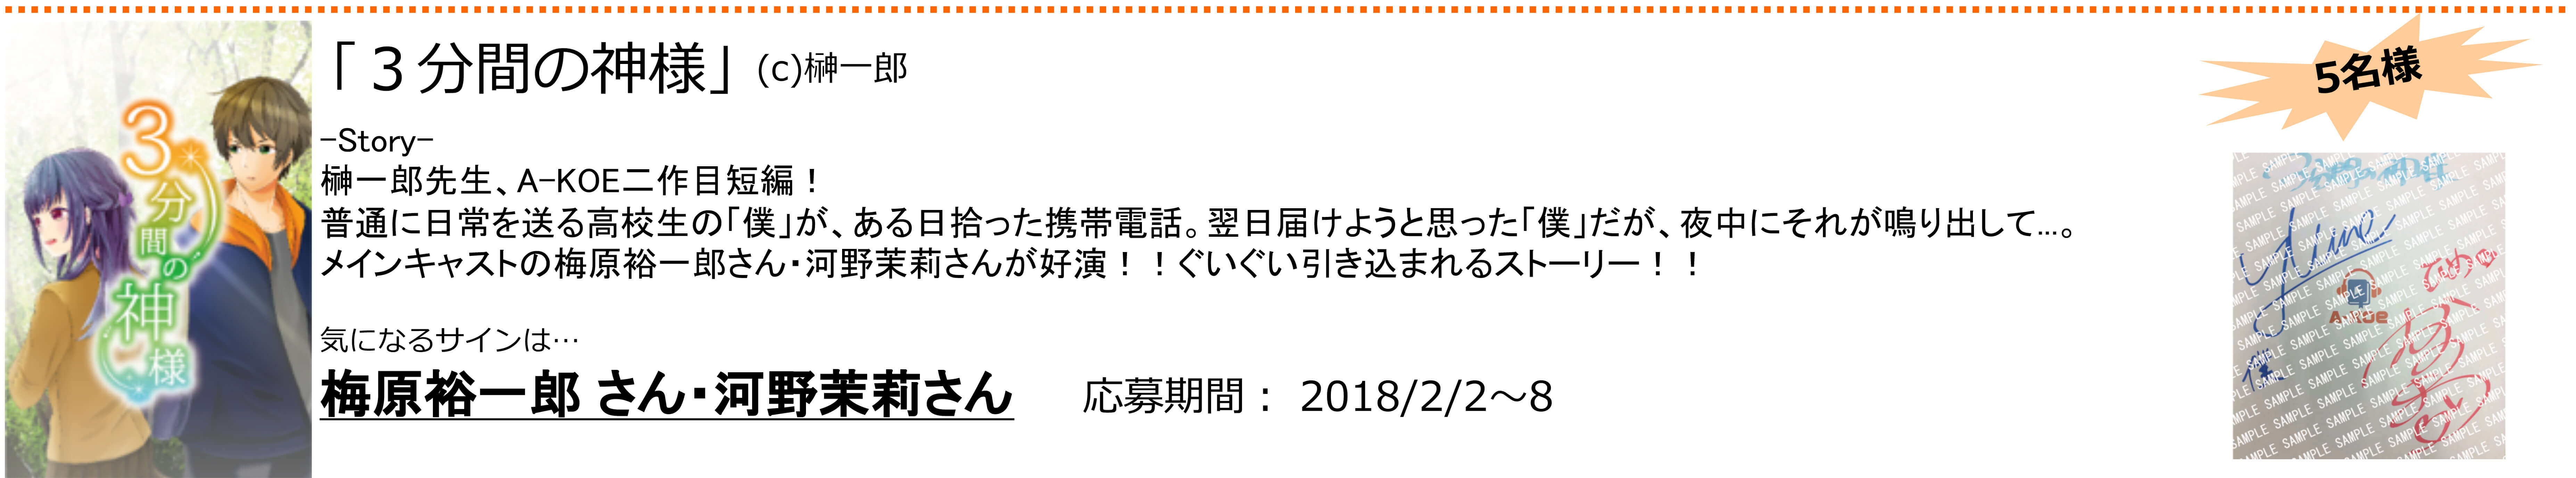 ニュースリリースOct5　プレゼントキャンペーン最終_横に修正